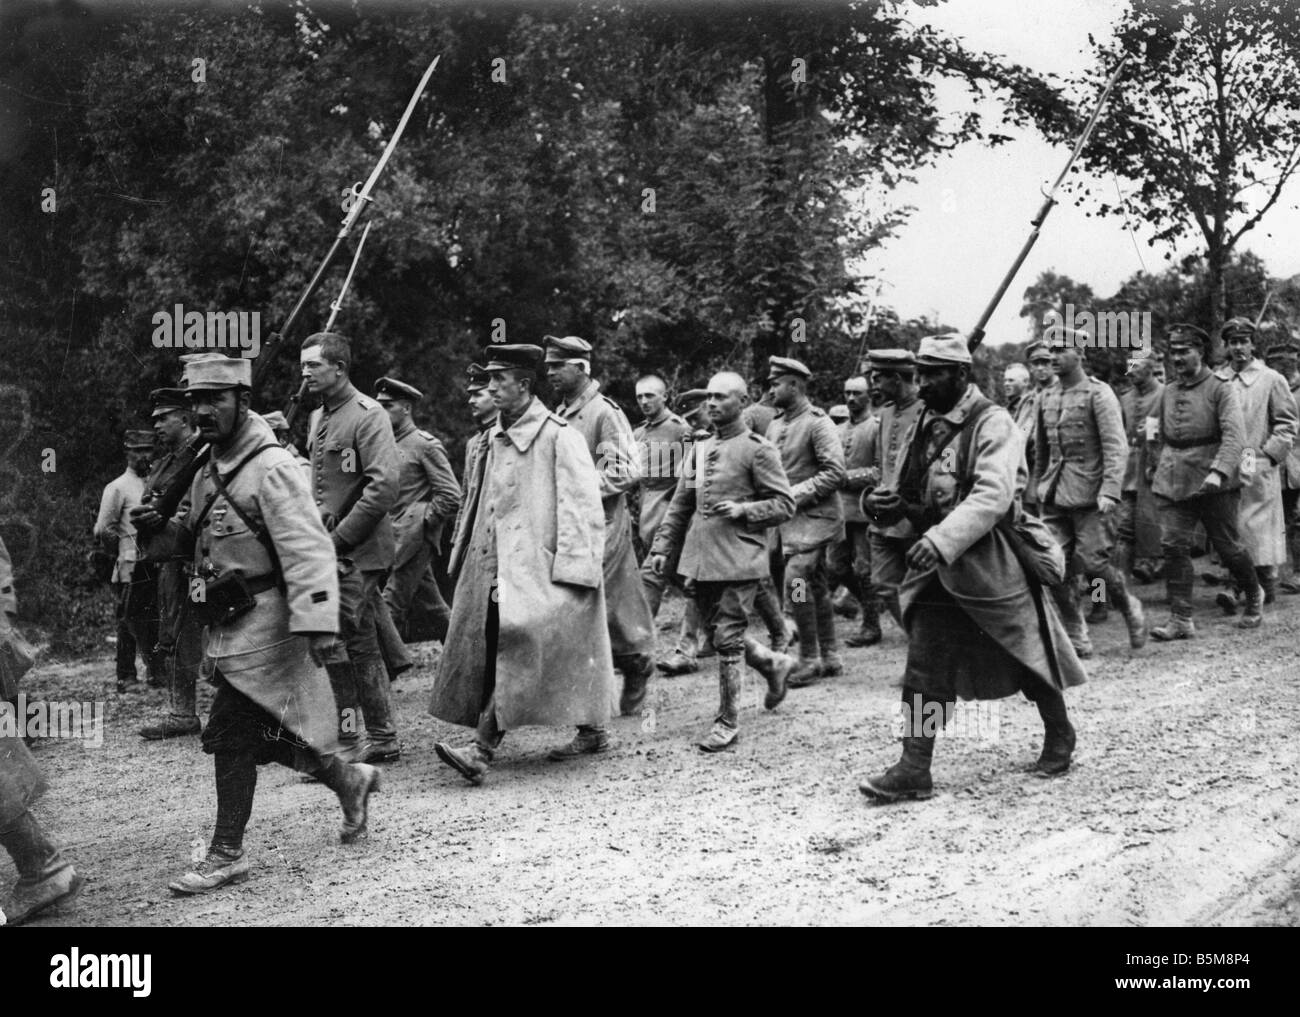 2 g55 K1 1915 10 WWI prigionieri di guerra tedeschi 1915 Storia della prima guerra mondiale i prigionieri di guerra ufficiali tedeschi come francese di prigionieri di guerra sul Foto Stock